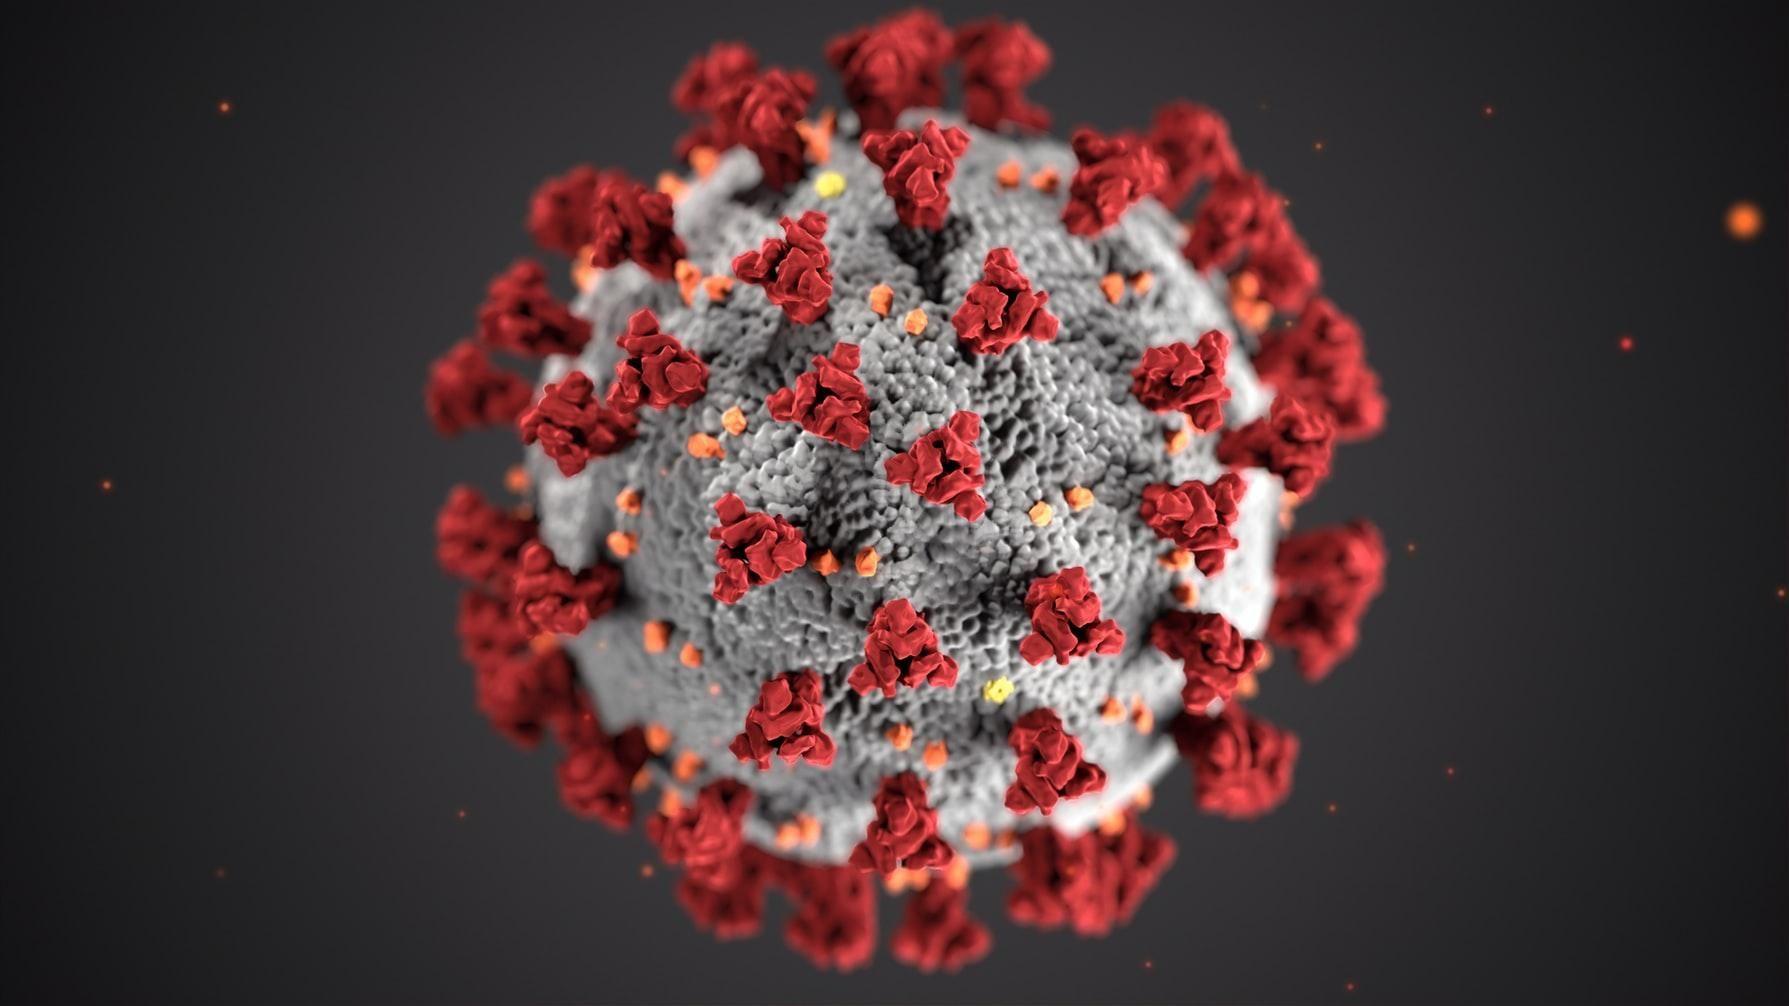 Коронавірус вдесятеро разів смертоносніший за свинячий грип, – ВООЗ